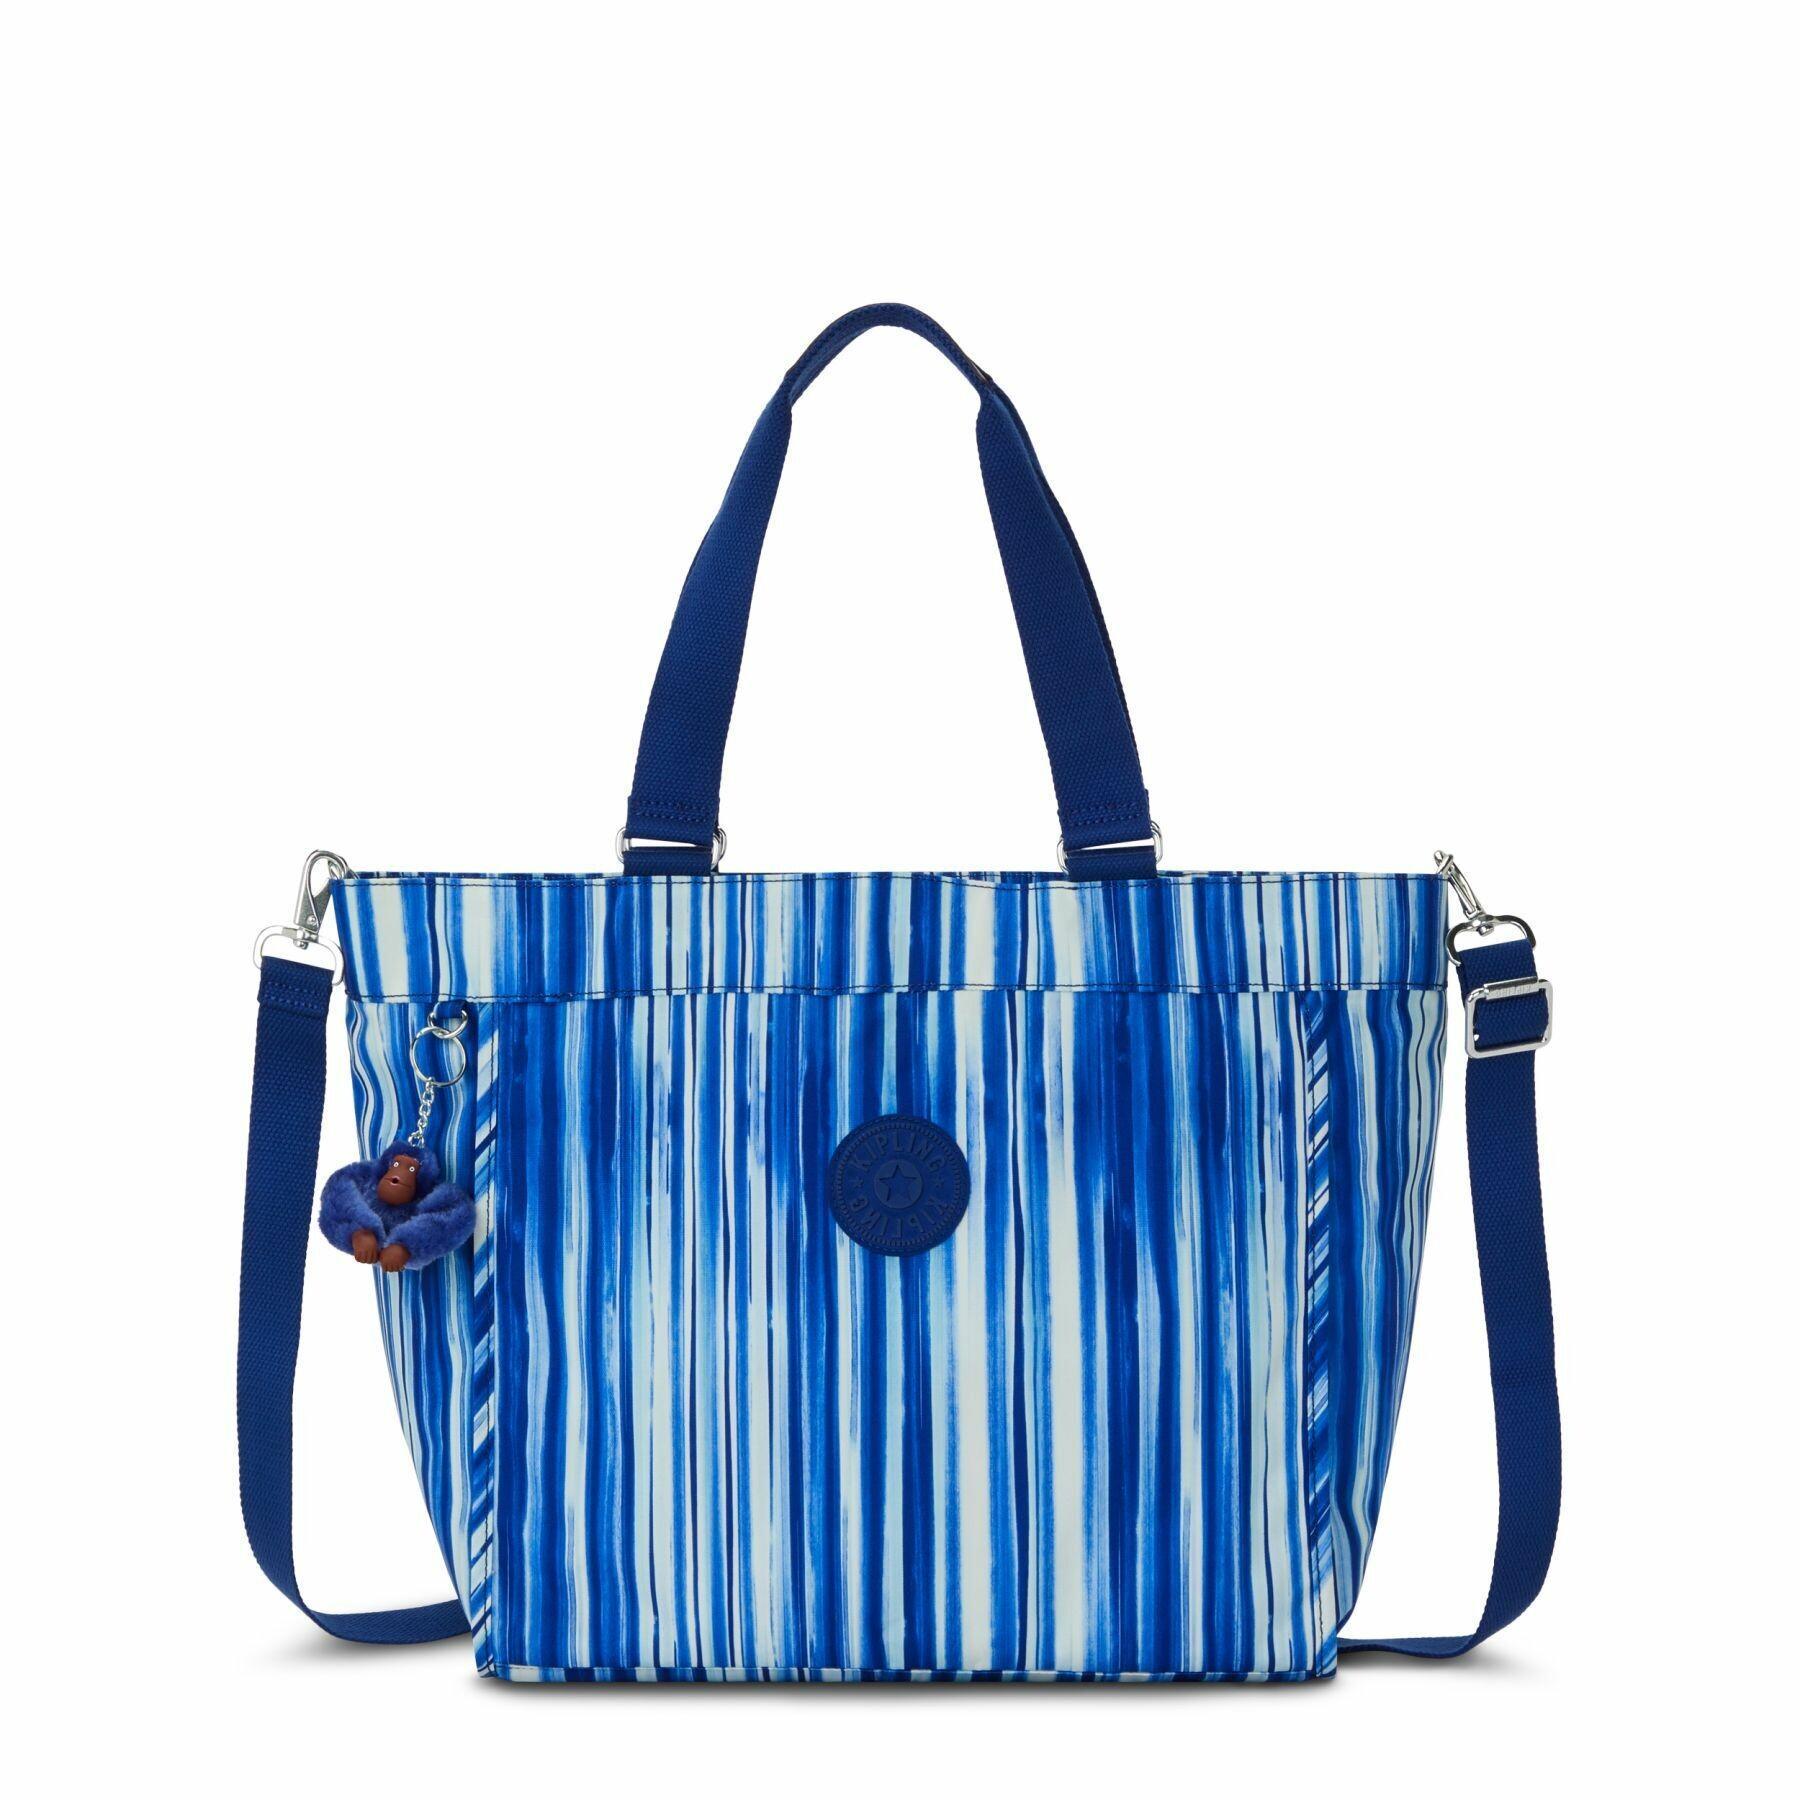 Women's handbag Kipling New Shopper L B Prt